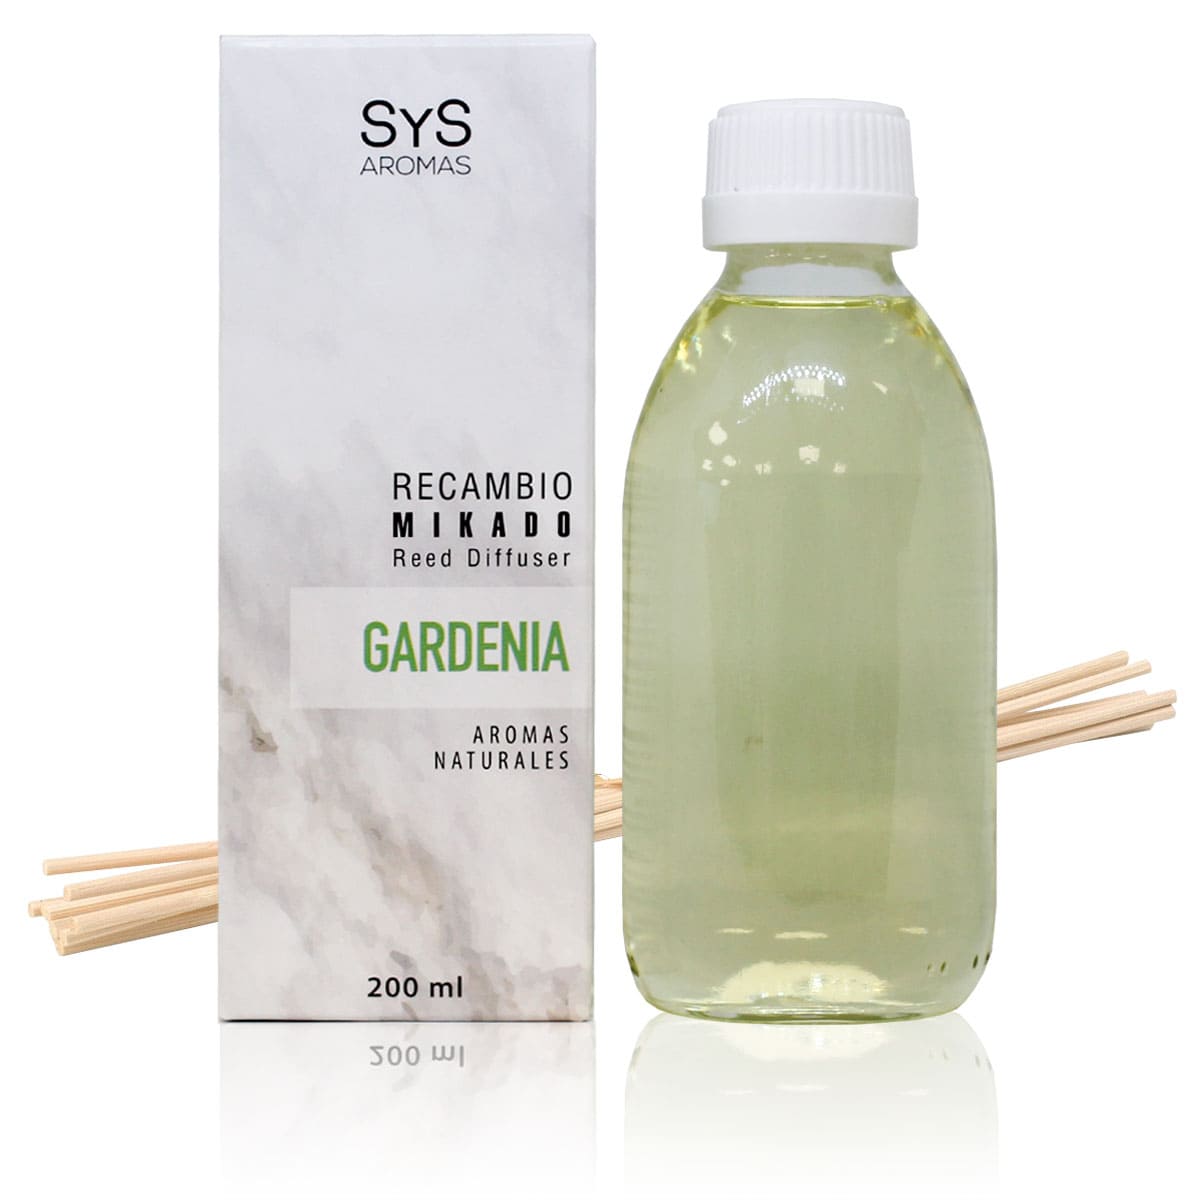 Comprar Recambio Mikado SyS Gardenia 200ml + Palos, SYS Aromas